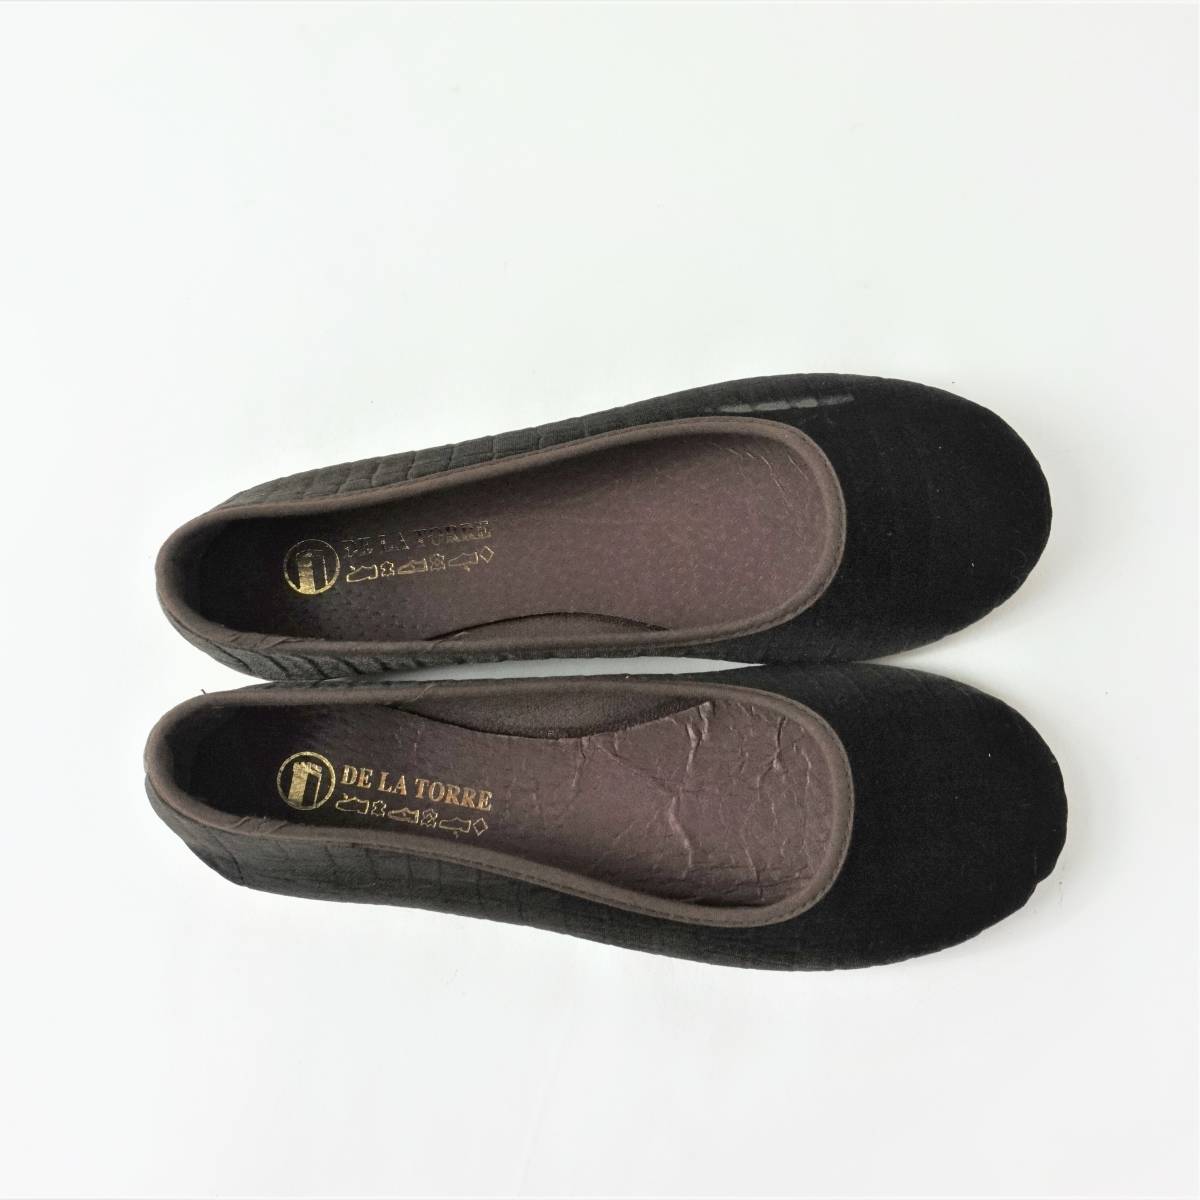 8 discount . outlet new goods unused DE LA TORREtelato-re velour ballet shoes Brown 24.0cm Spain made 4804787